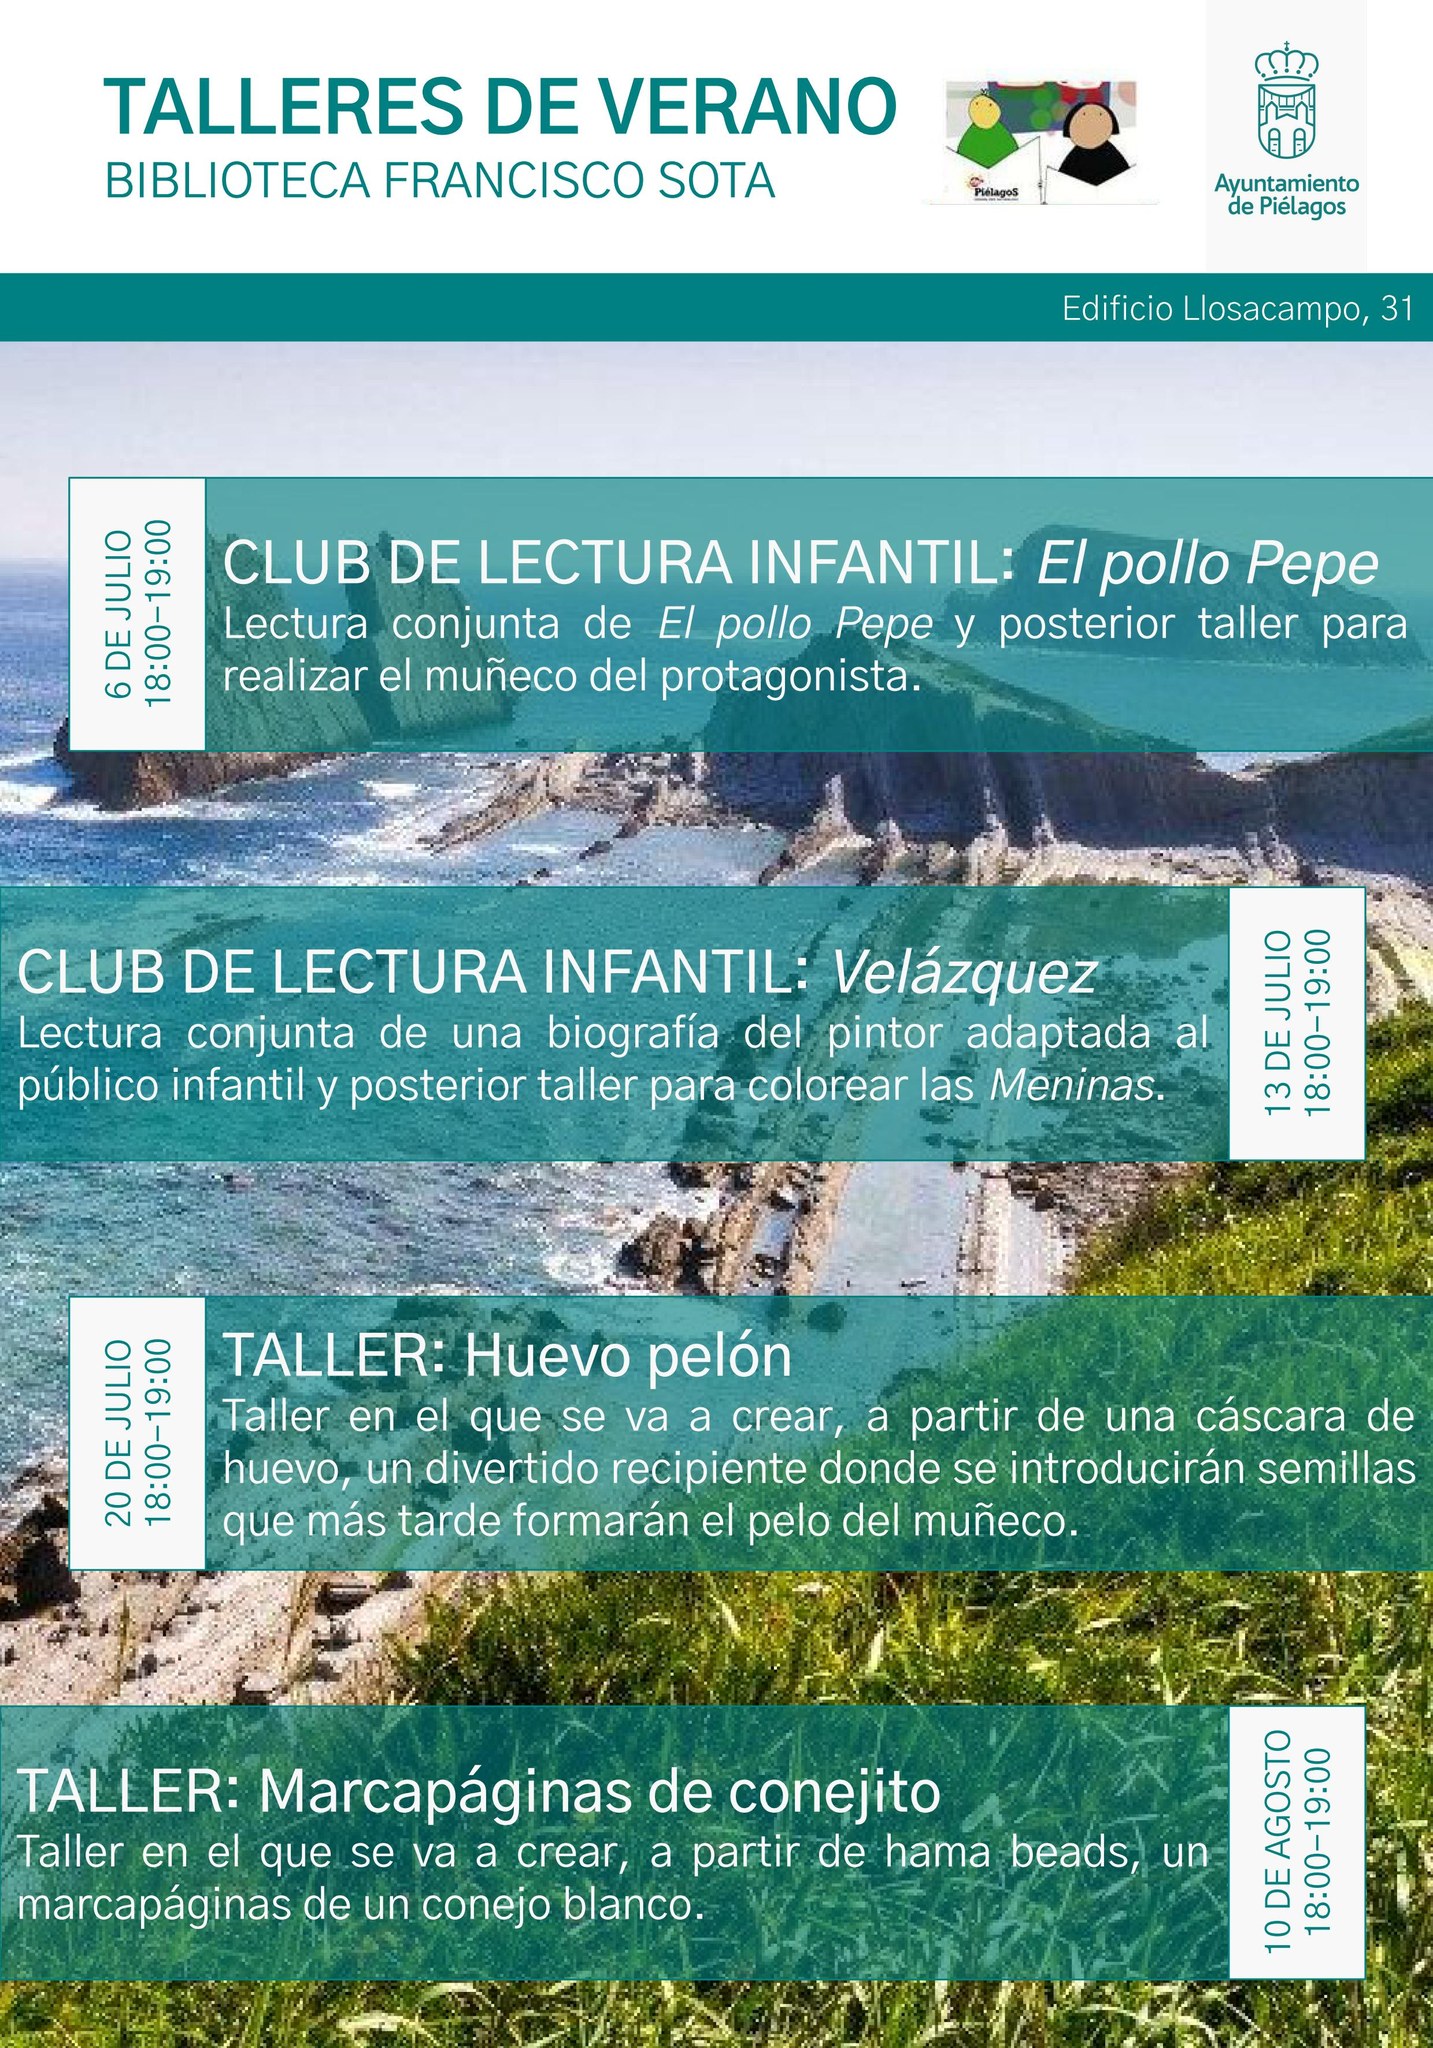 Talleres Verano 2023 – Ayuntamiento de Piélagos